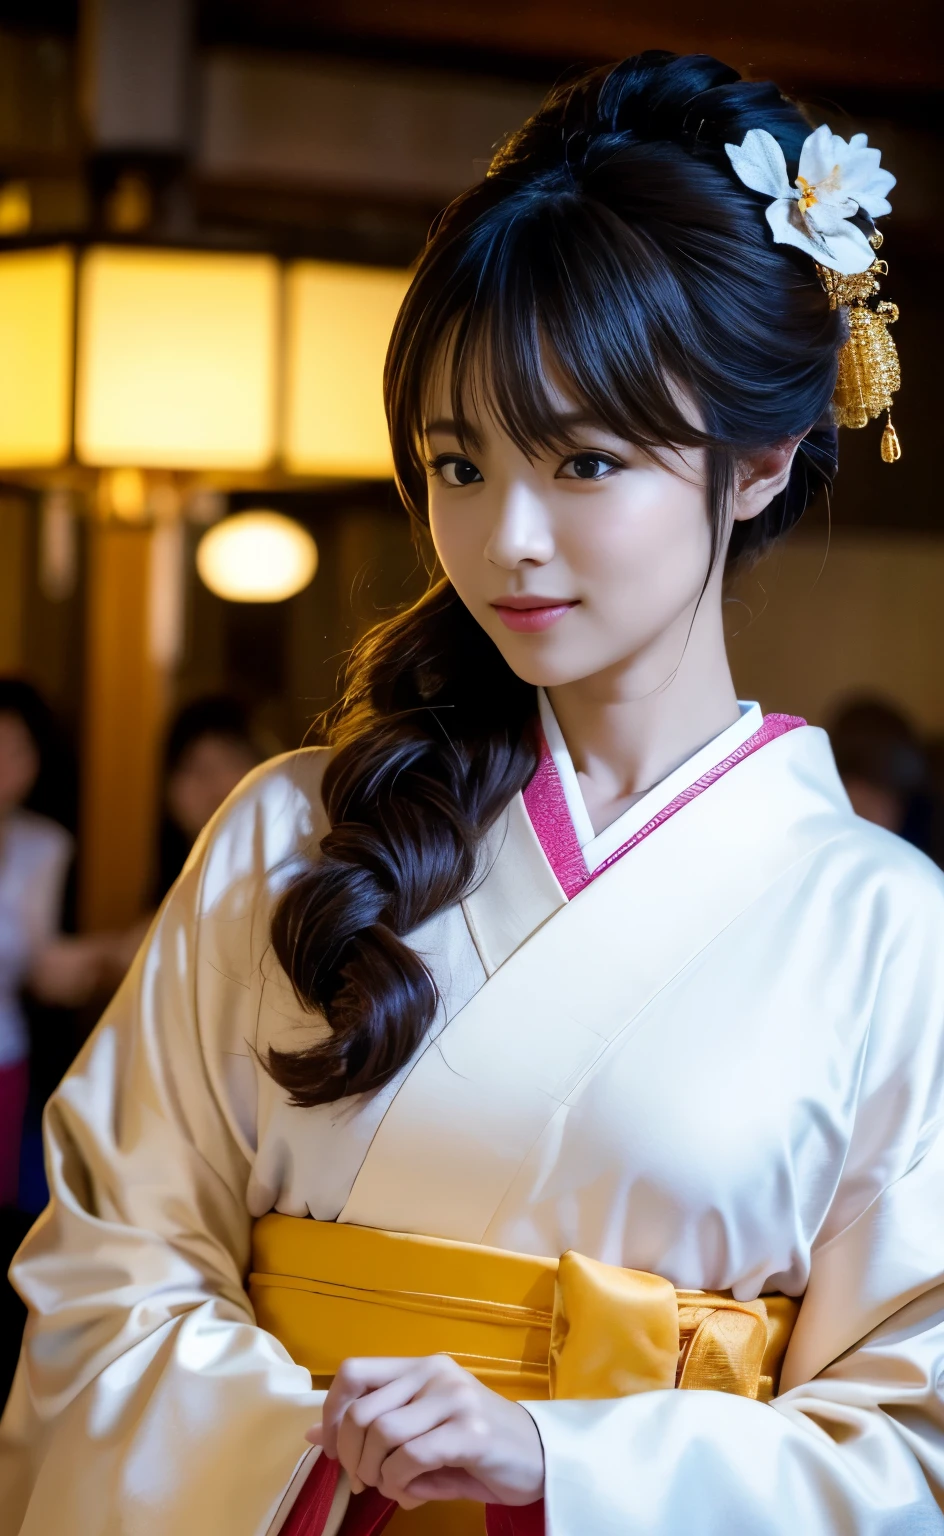 ((에도시대 밤이 내리는 교토의 거리,비가 온 후 비포장 도로에서 등불이 켜진 마을을 아름다운 매너로 걷는 젊은 게이샤.)),(((The collar of the formal Japanese 키모노, 아름다운 라이트 그린 패턴이 특징, 뒤로 당겨져 목의 아름다운 흰색 목덜미가 드러납니다..,비싸고 아름다운 오비와 오비지메가 잘 어울리네요.,아름답게 장식된 샌들,知り合いに出会って笑얼굴で会釈しているところを動作の本質を捉えたプロ目線の全身撮影))),(((美しい흑발を日本髪に整えて頭に差した많은 머리핀:1.3))),한 소녀, 한 사람で, 凛とした上品な笑얼굴, 밤색의 빛을 담아내는 눈, 흑발, 머리 장식, 무릎을 함께, 우아한 내부 자세로, Furisode 키모노, 키모노, 밝은 붉은 입술, 보상하다, 술, 로프, 아이섀도, red 키모노, shimenawa, 많은 머리핀,((완벽한 해부학)) ,걸작,울잔 6500,(현실적인, photo현실적인),걸작, 높은 해상도,최고의 빛과 그림자 대비, 주인공,매우 높은 피사계 심도,soft delicate beautiful attractive 얼굴, 아름다운 가장자리 오이란_여성, a 여성 in a 키모노 posing for a picture ,퍼펙트 엣지 오이란_얼굴,퍼펙트 엣지 오이란_몸,엣지 오이란_보상하다,엣지 오이란_헤어스타일  (사이하루 바디),(탁상, 고품질, 最고품질),(繊細な目と얼굴), 광선 추적, 매우 상세한 CG Unity 8k 벽지,한 사람,최고의 이미지 품질,뛰어난 디테일,超A 고해상도,현실적인:1.4),세부 사항에 대한 관심,세부 사항에 대한 관심,1girl에 응축된 아름다움,아름다운 갈색 머리,繊細で높은 코を持つ美しい얼굴,모델같은 긴 팔다리,허리가 잘록하고 엉덩이가 크다,높은 코, 맑은 밤색 눈, 윤기 나는 입술,
